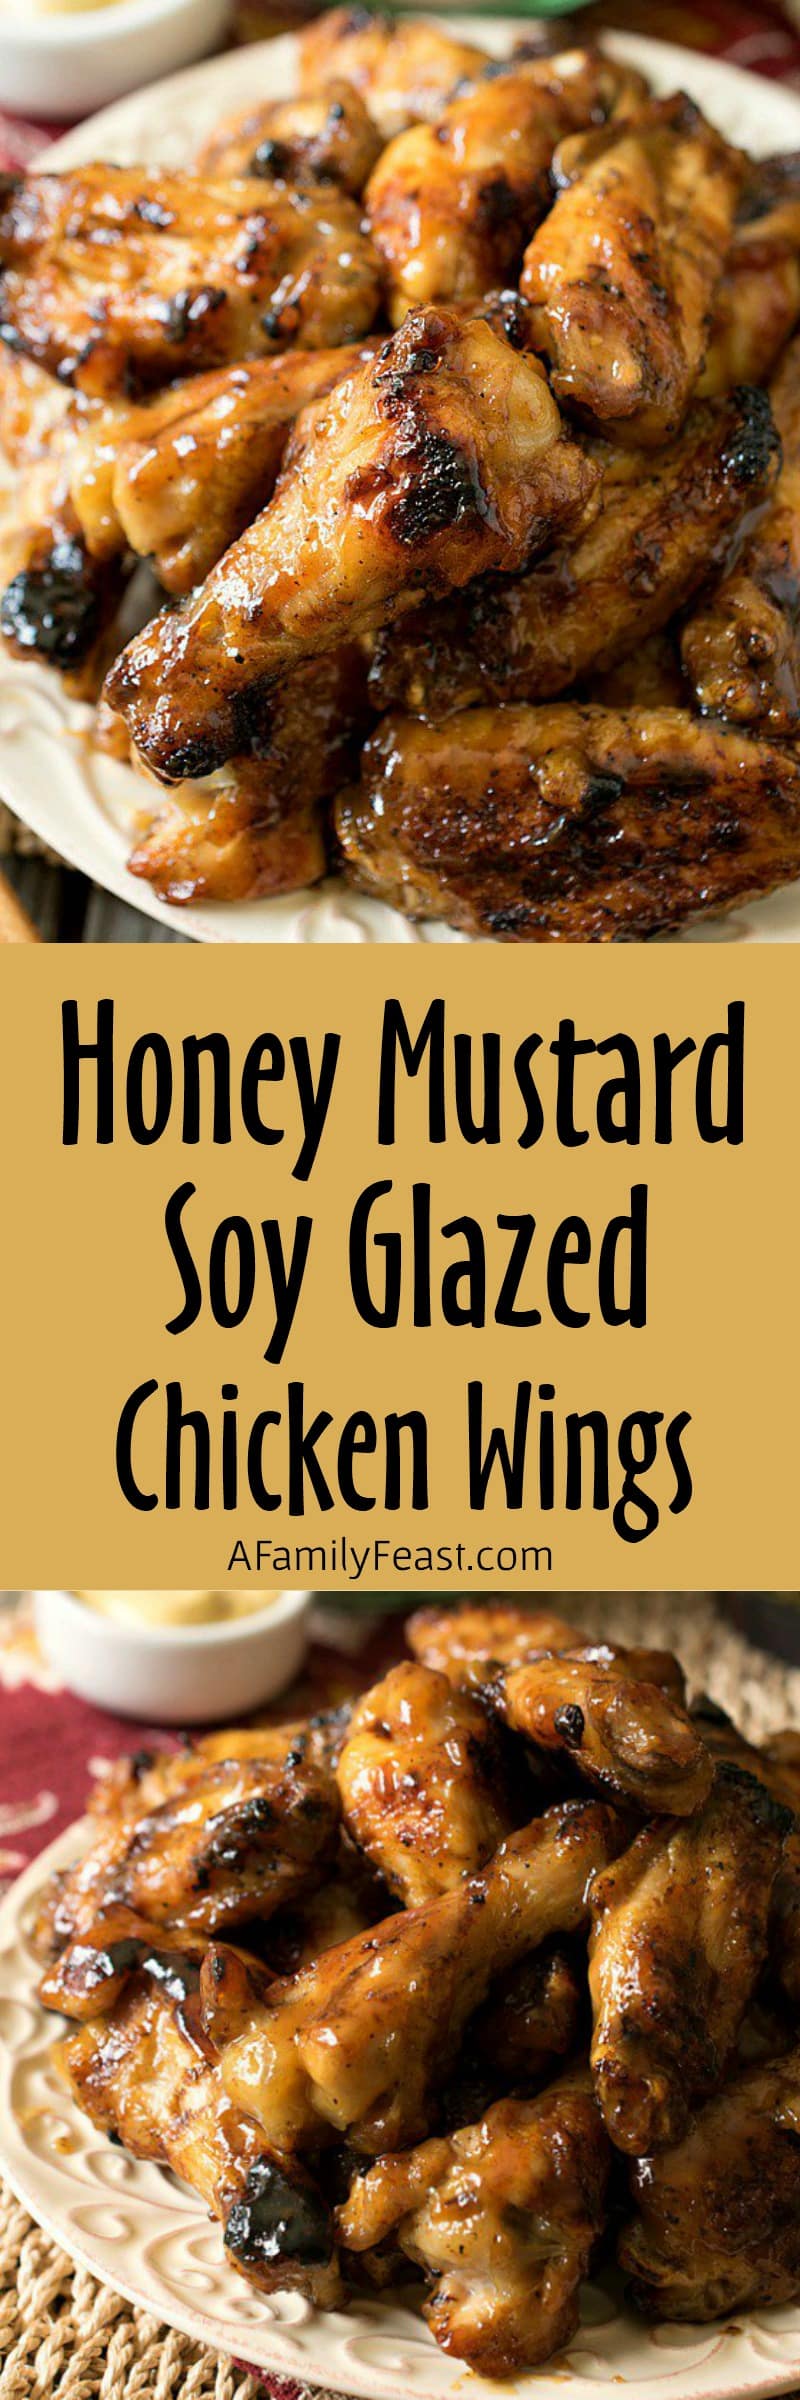 Honey Mustard Soy Glazed Chicken Wings